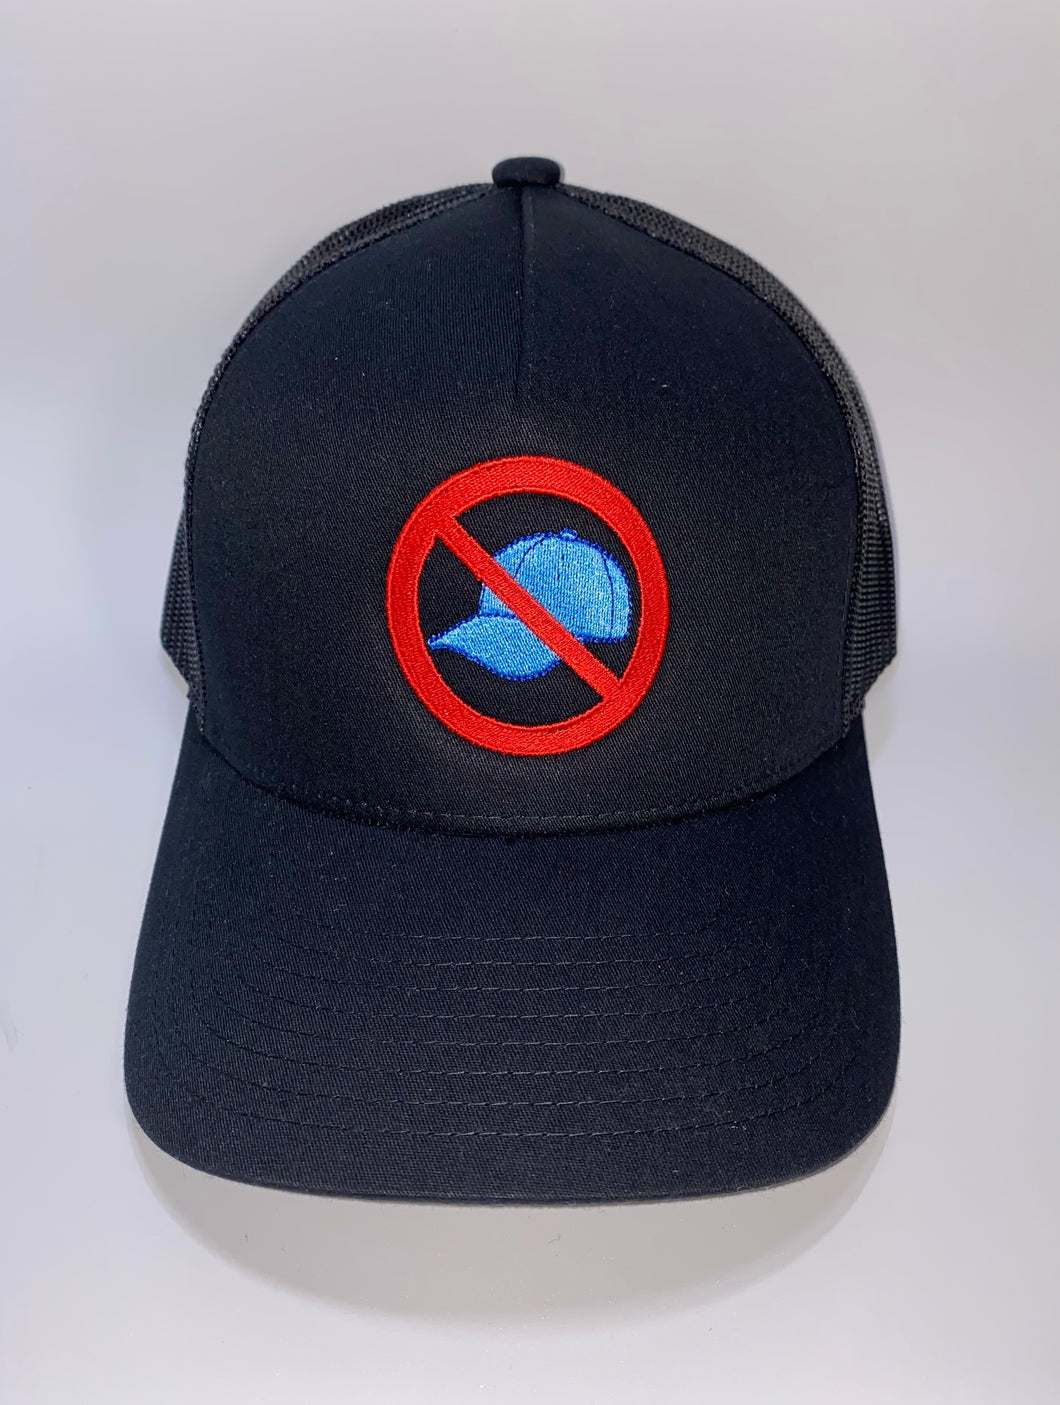 No Rap Cap Trucker Hat